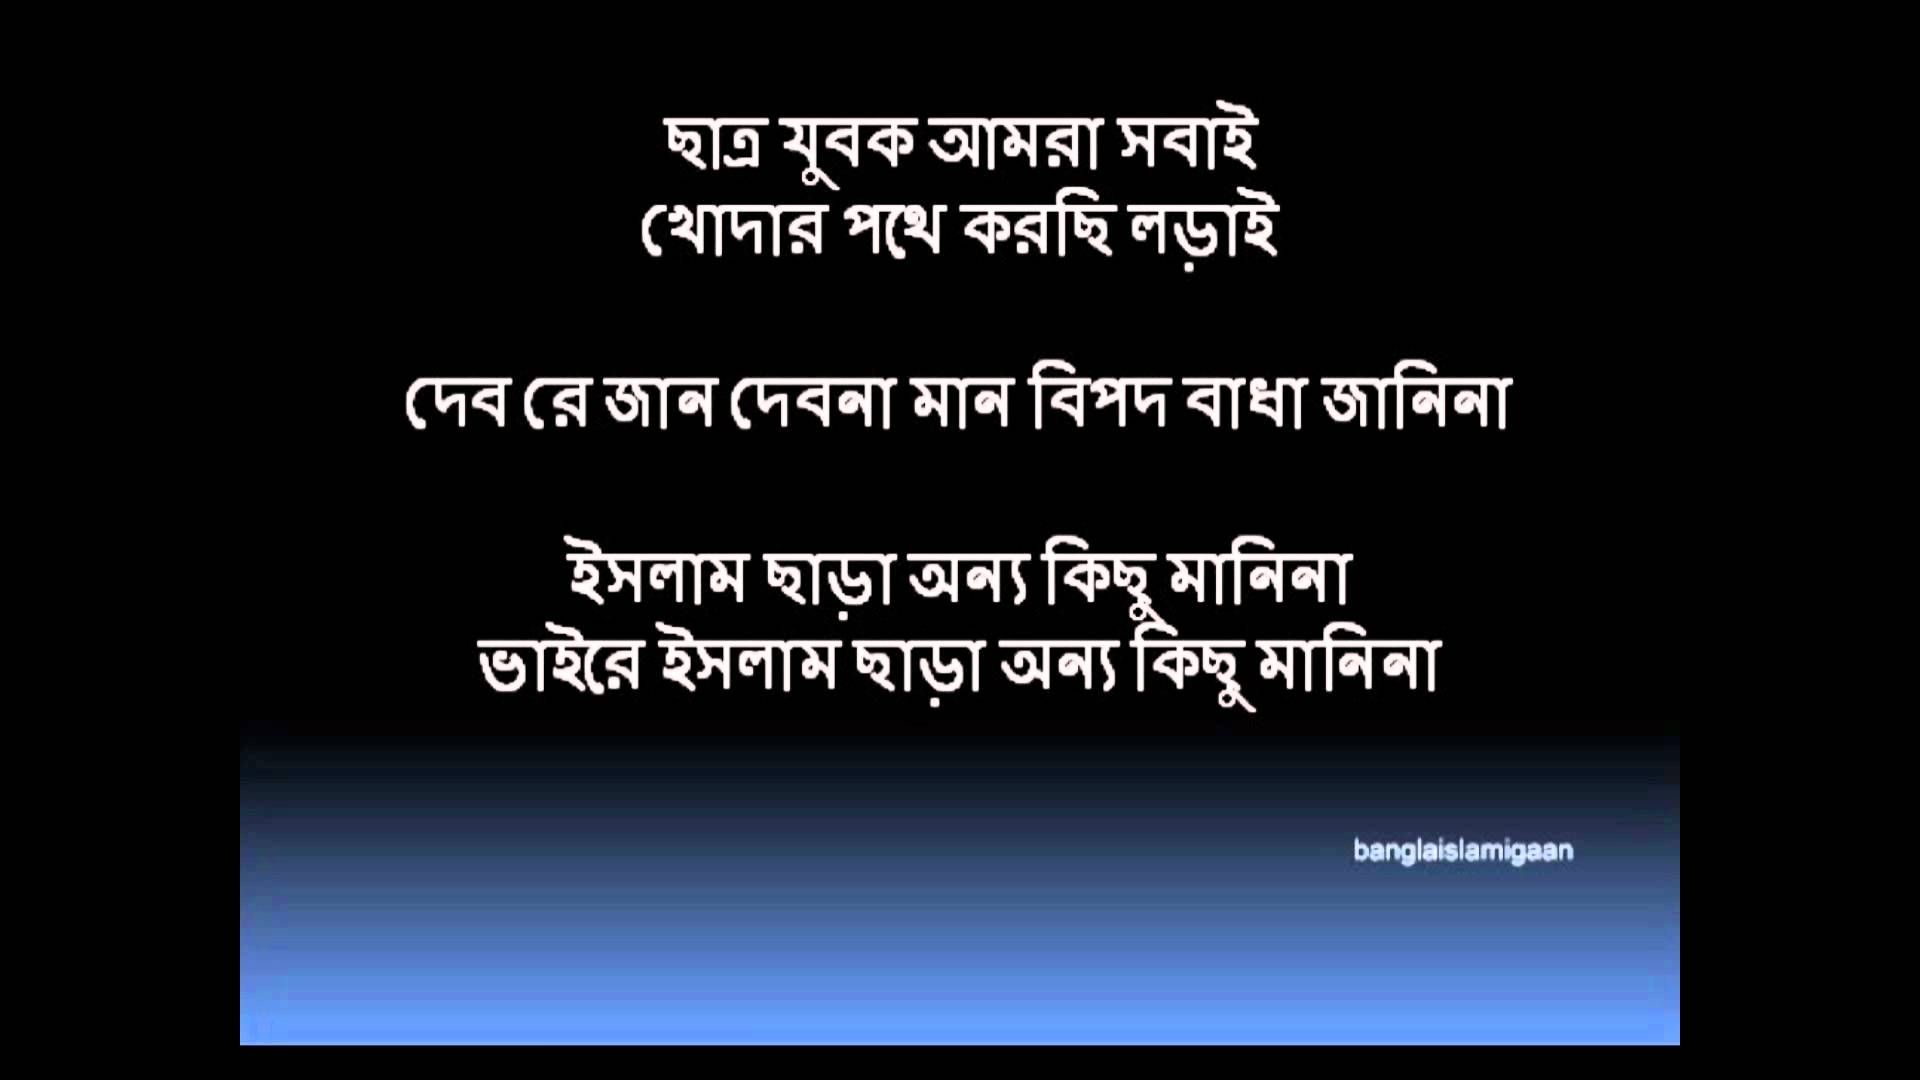 fond d'écran islamique bangla,texte,police de caractère,ciel,la technologie,capture d'écran